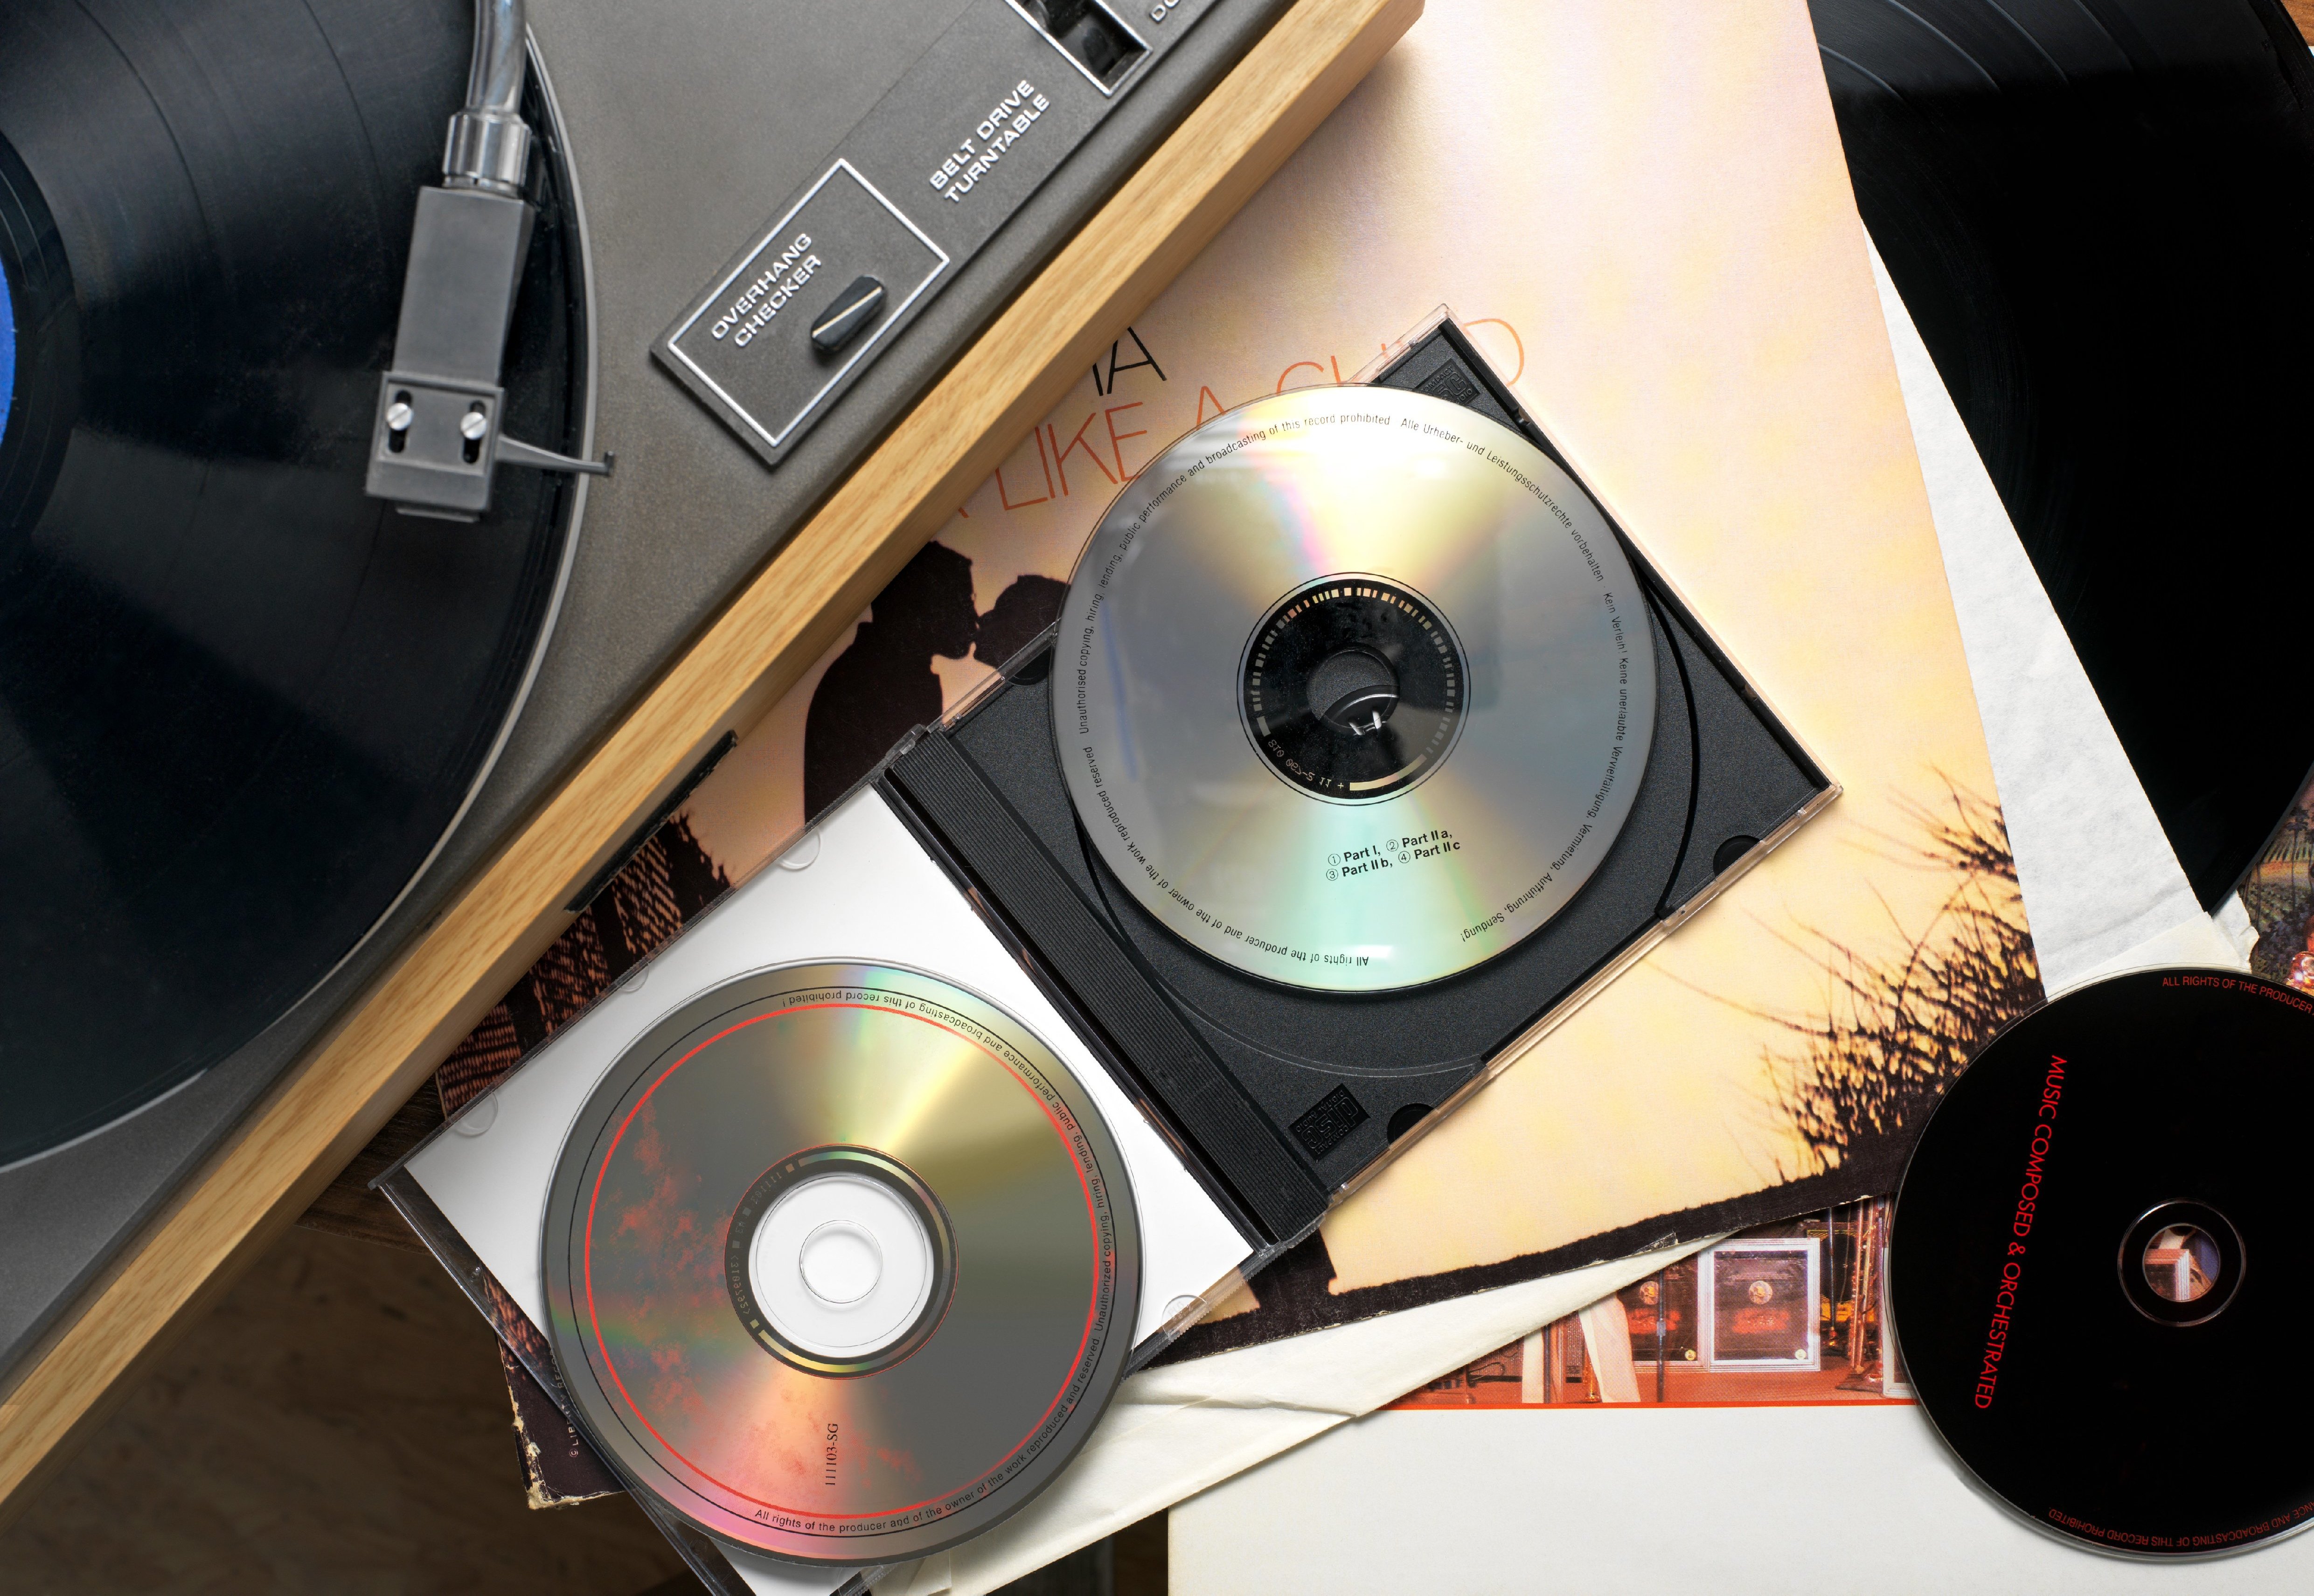 Поделки из компьютерных CD дисков - 71 фото идея необычных поделок из компакт-дисков